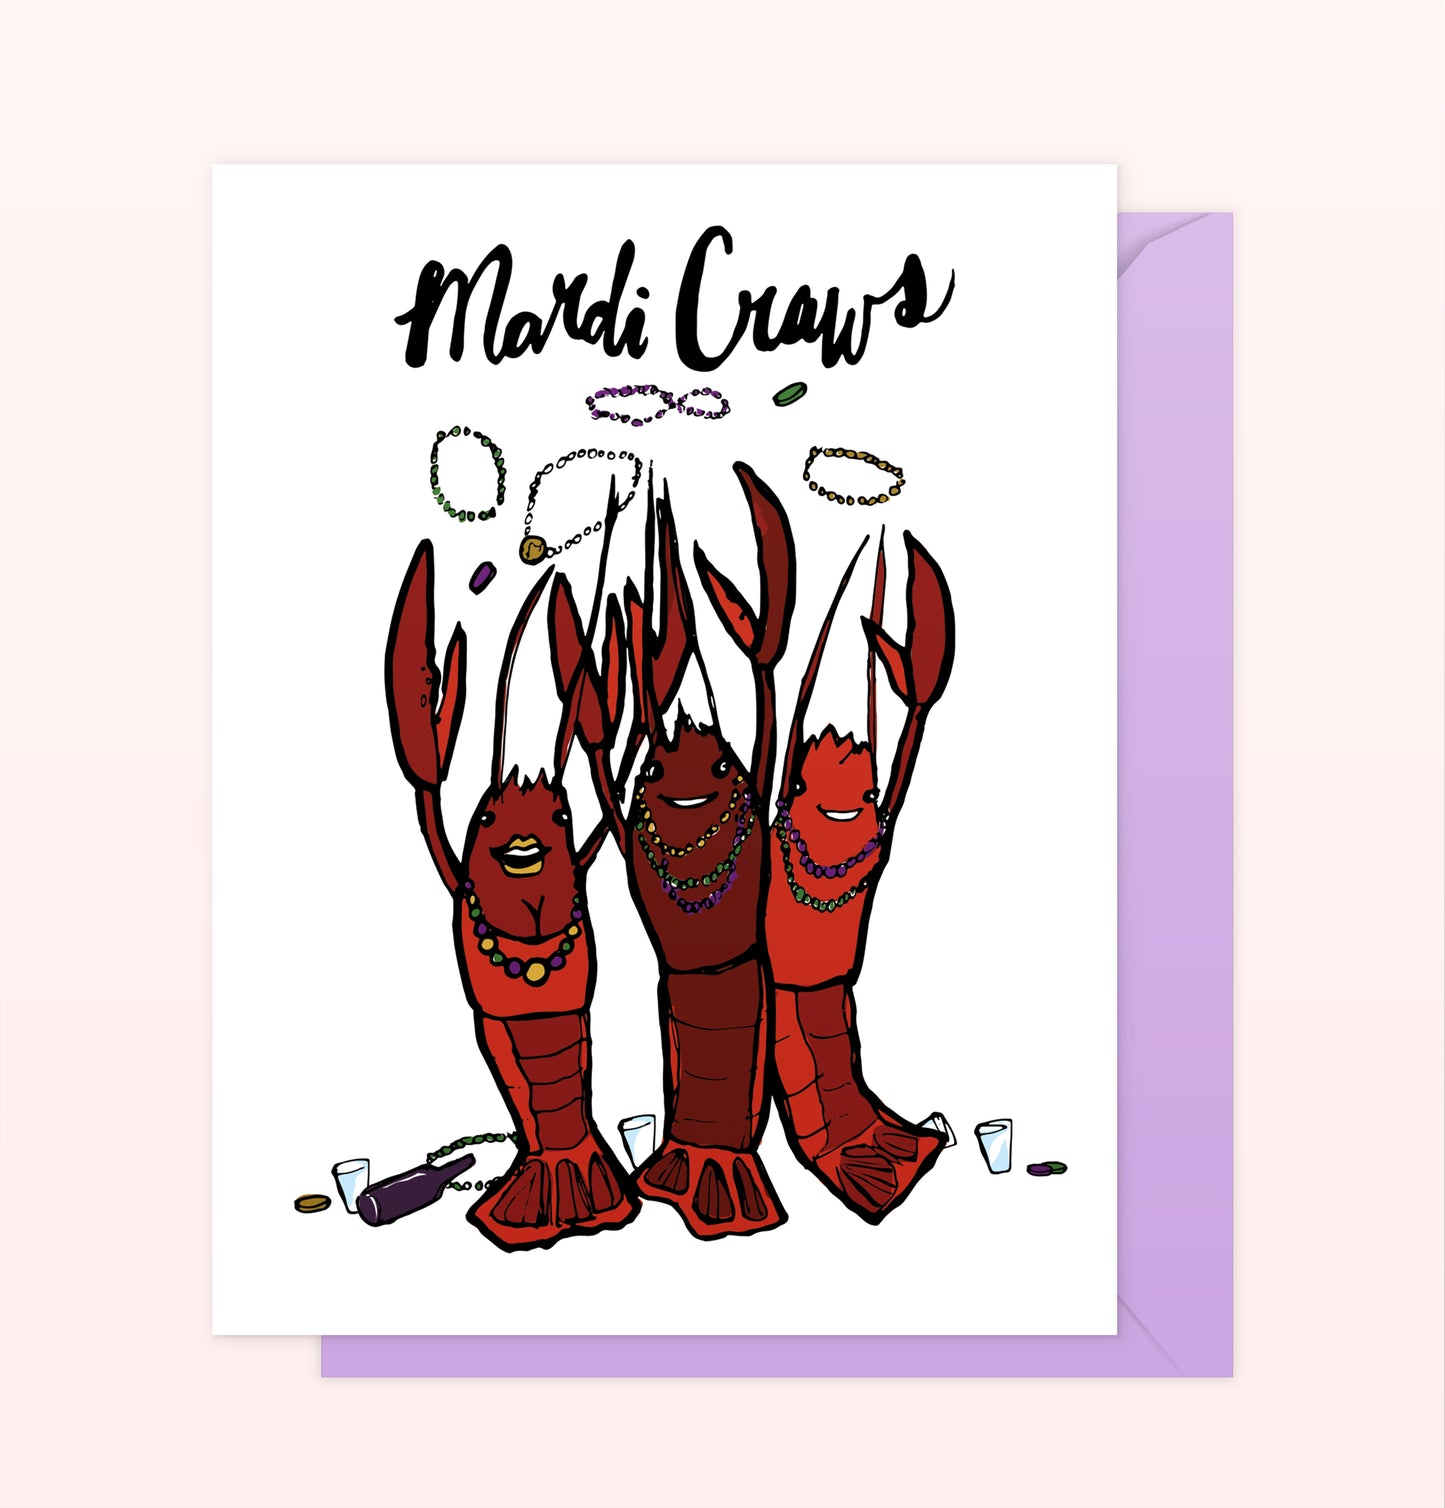 "Mardi Craws" Crawfish Mardi Gras Card